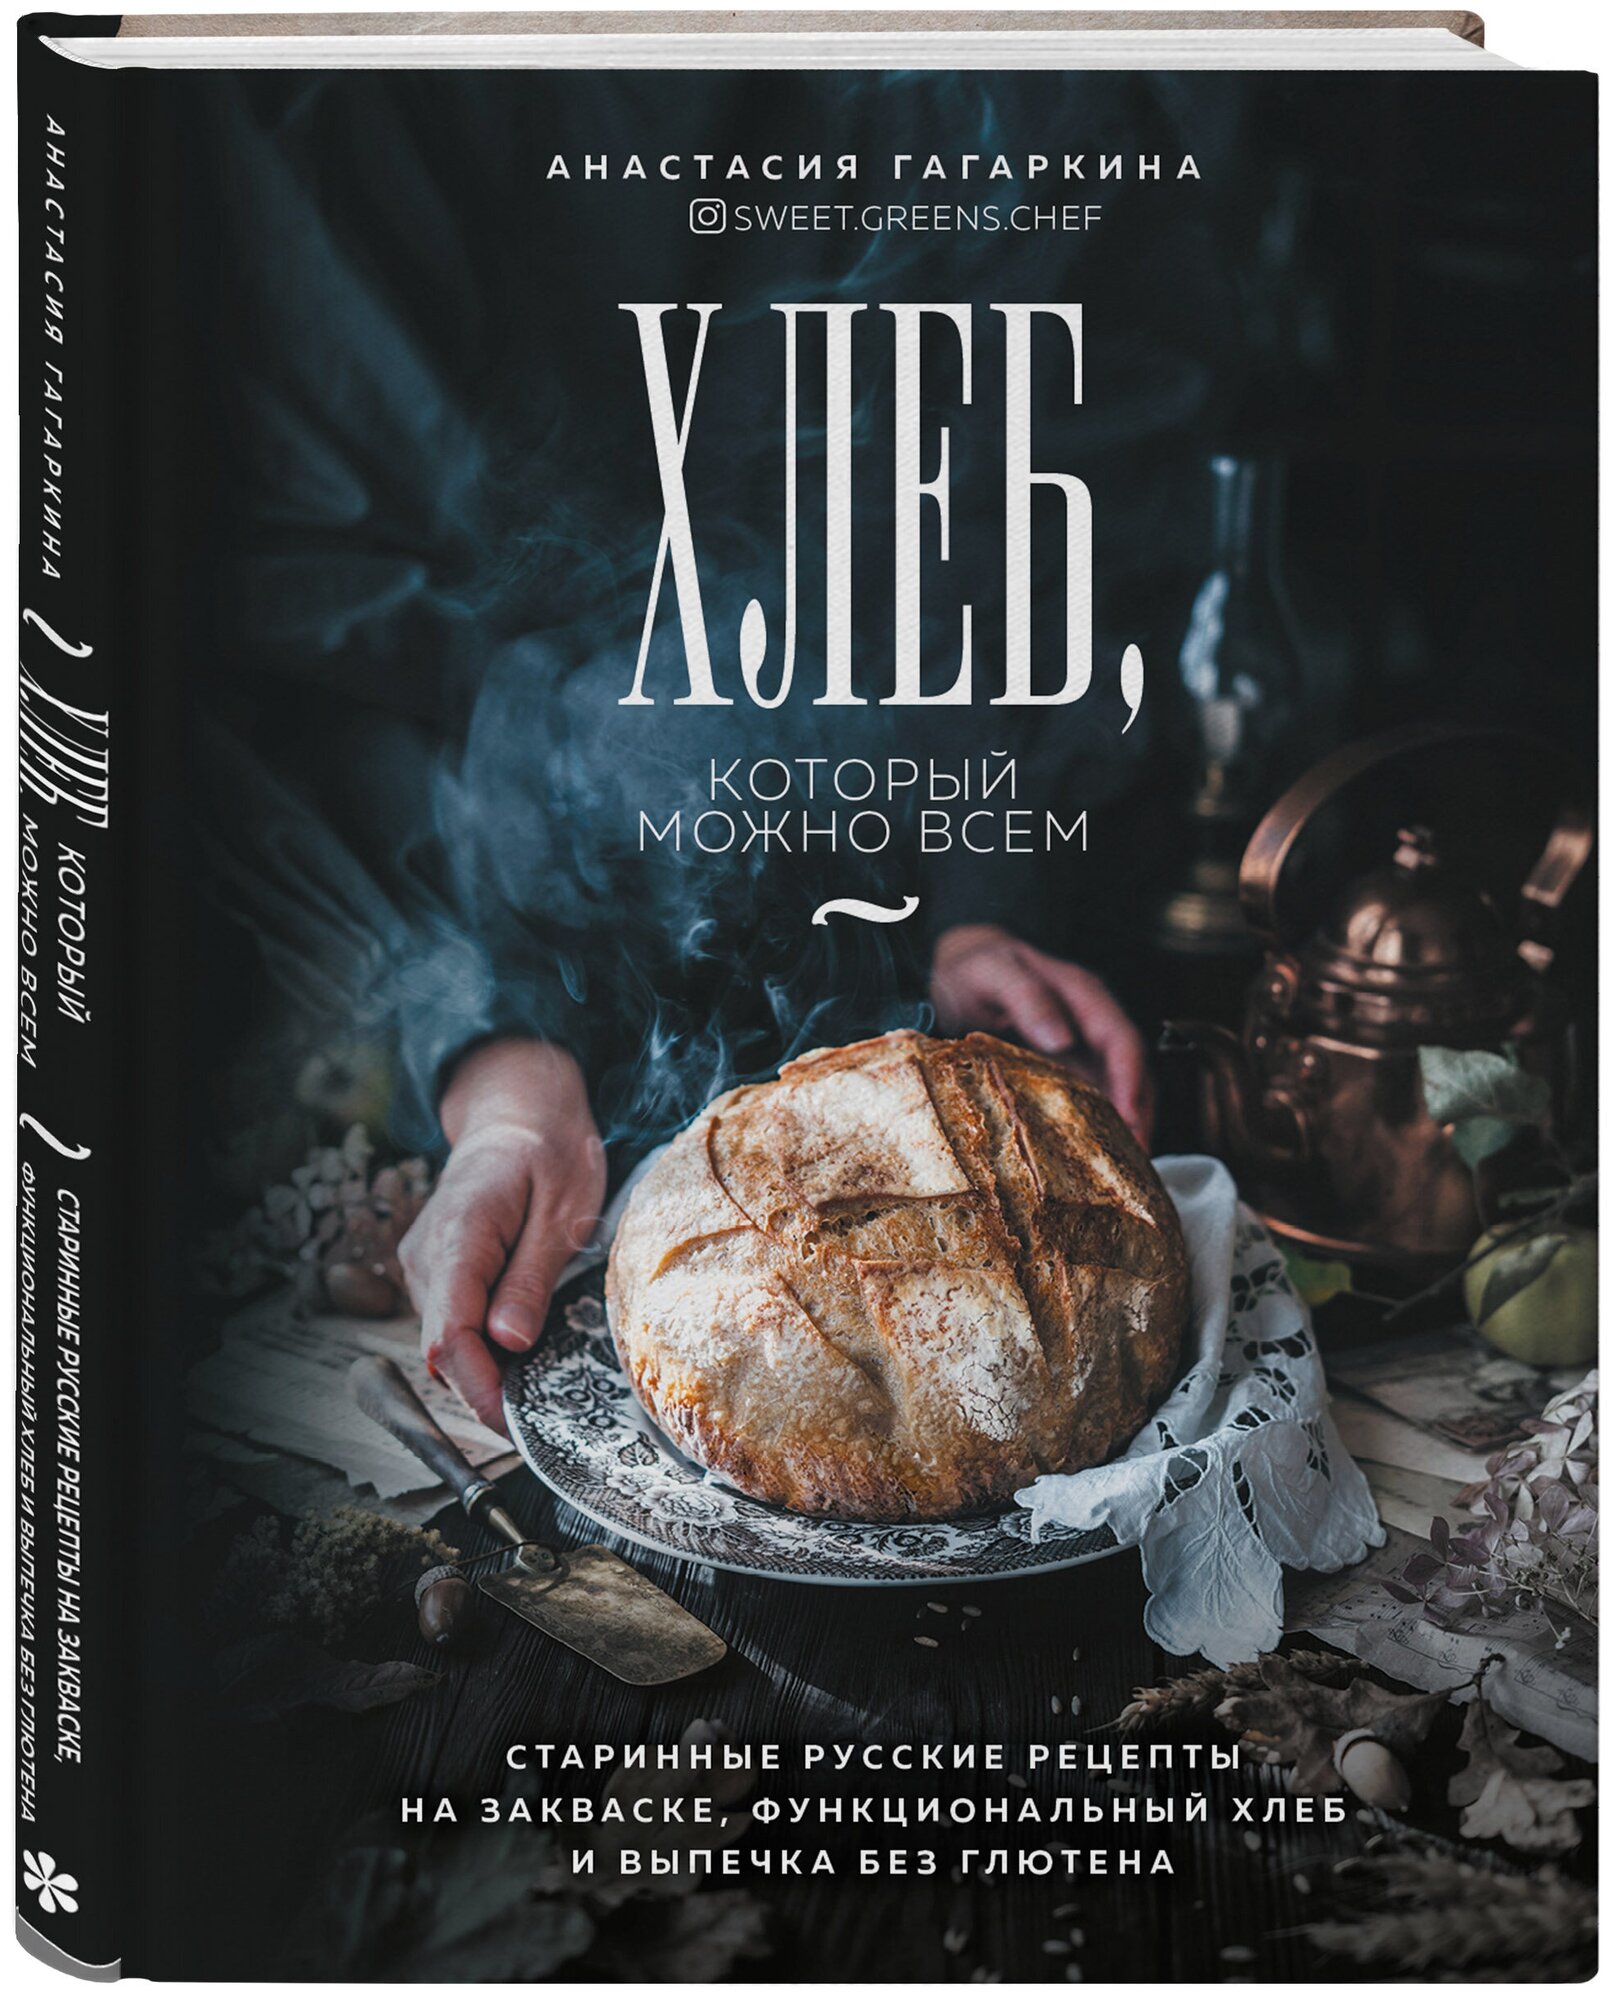 Хлеб, который можно всем: старинные русские рецепты на закваске, функциональный хлеб и выпечка без глютена - фото №14